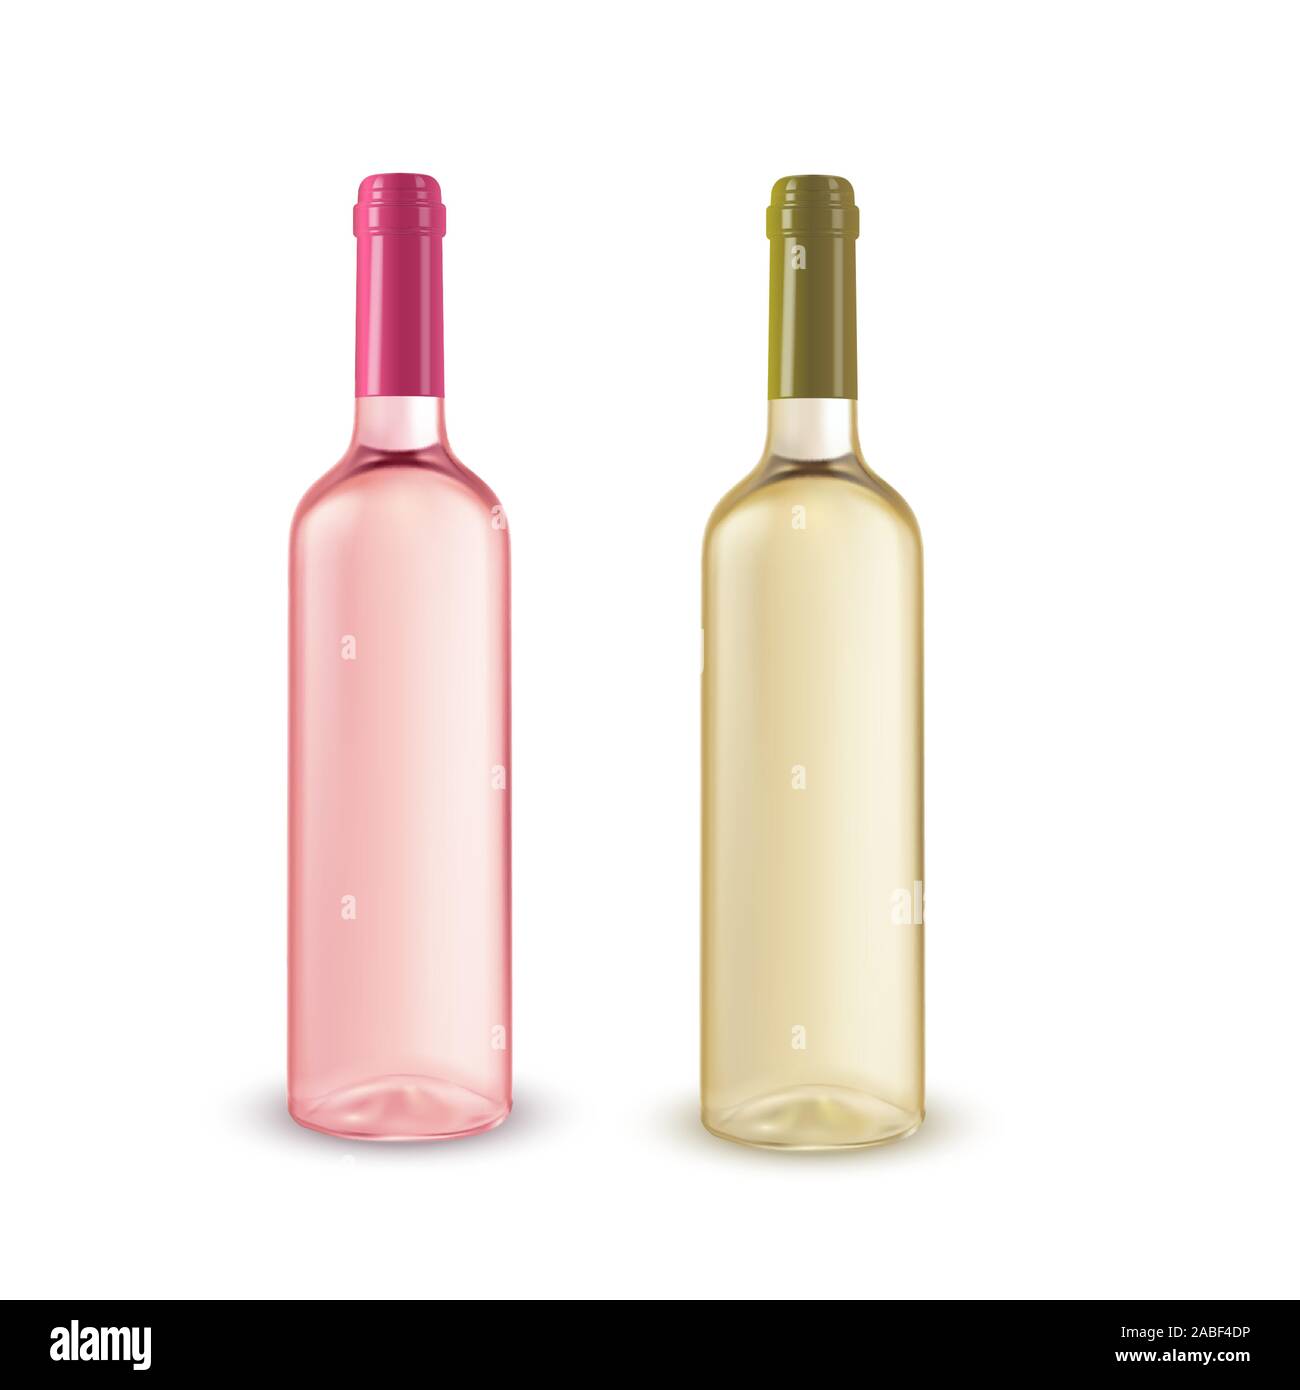 Realistische Abbildung von 2 Flaschen Wein ohne Label Stock-Vektorgrafik -  Alamy